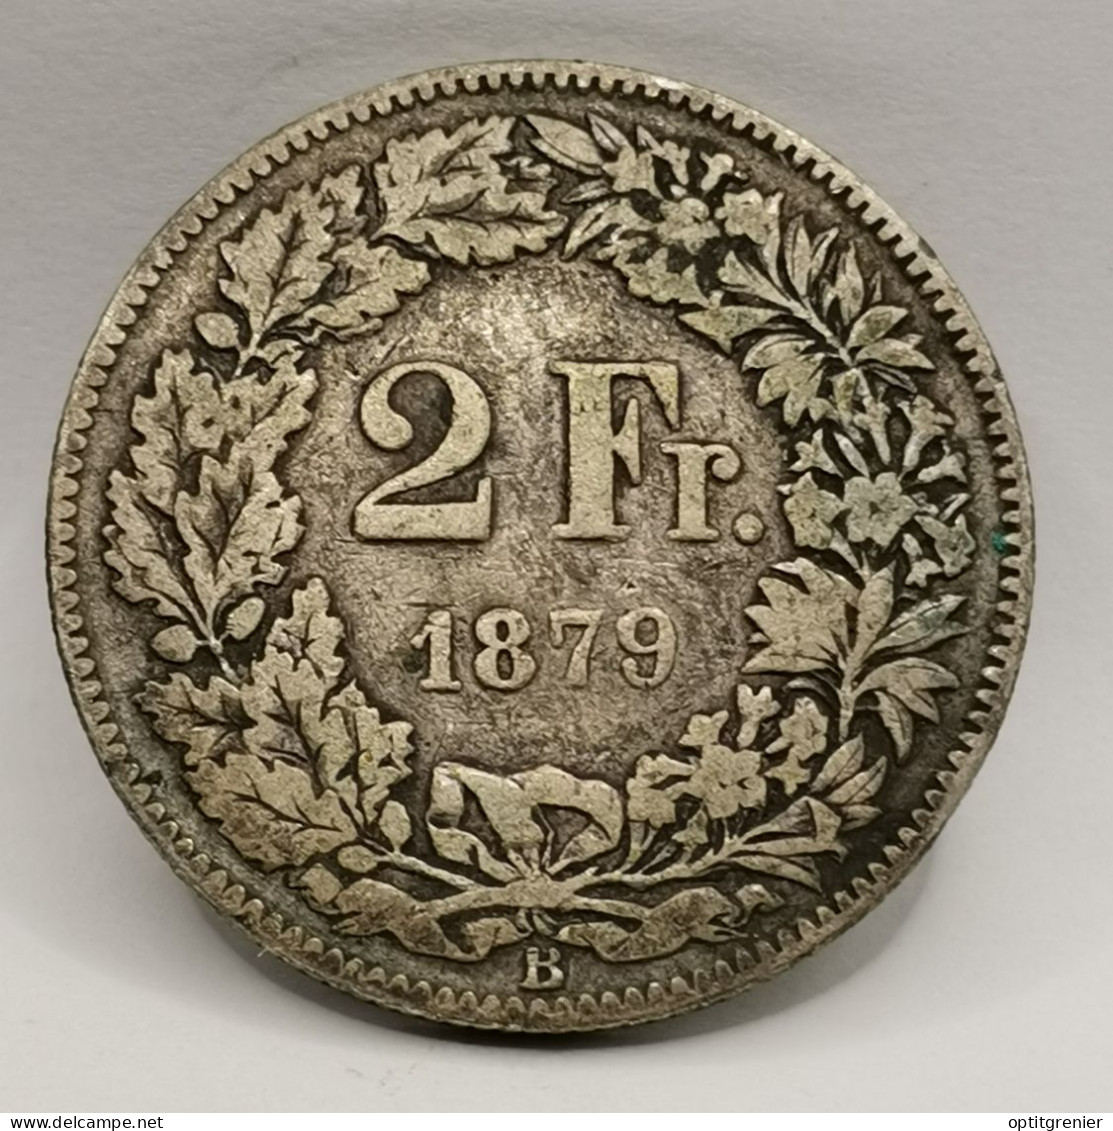 2 FRANCS SUISSE ARGENT 1879 B BERNE HELVETIA DEBOUT / SWITZERLAND SILVER - 2 Francs